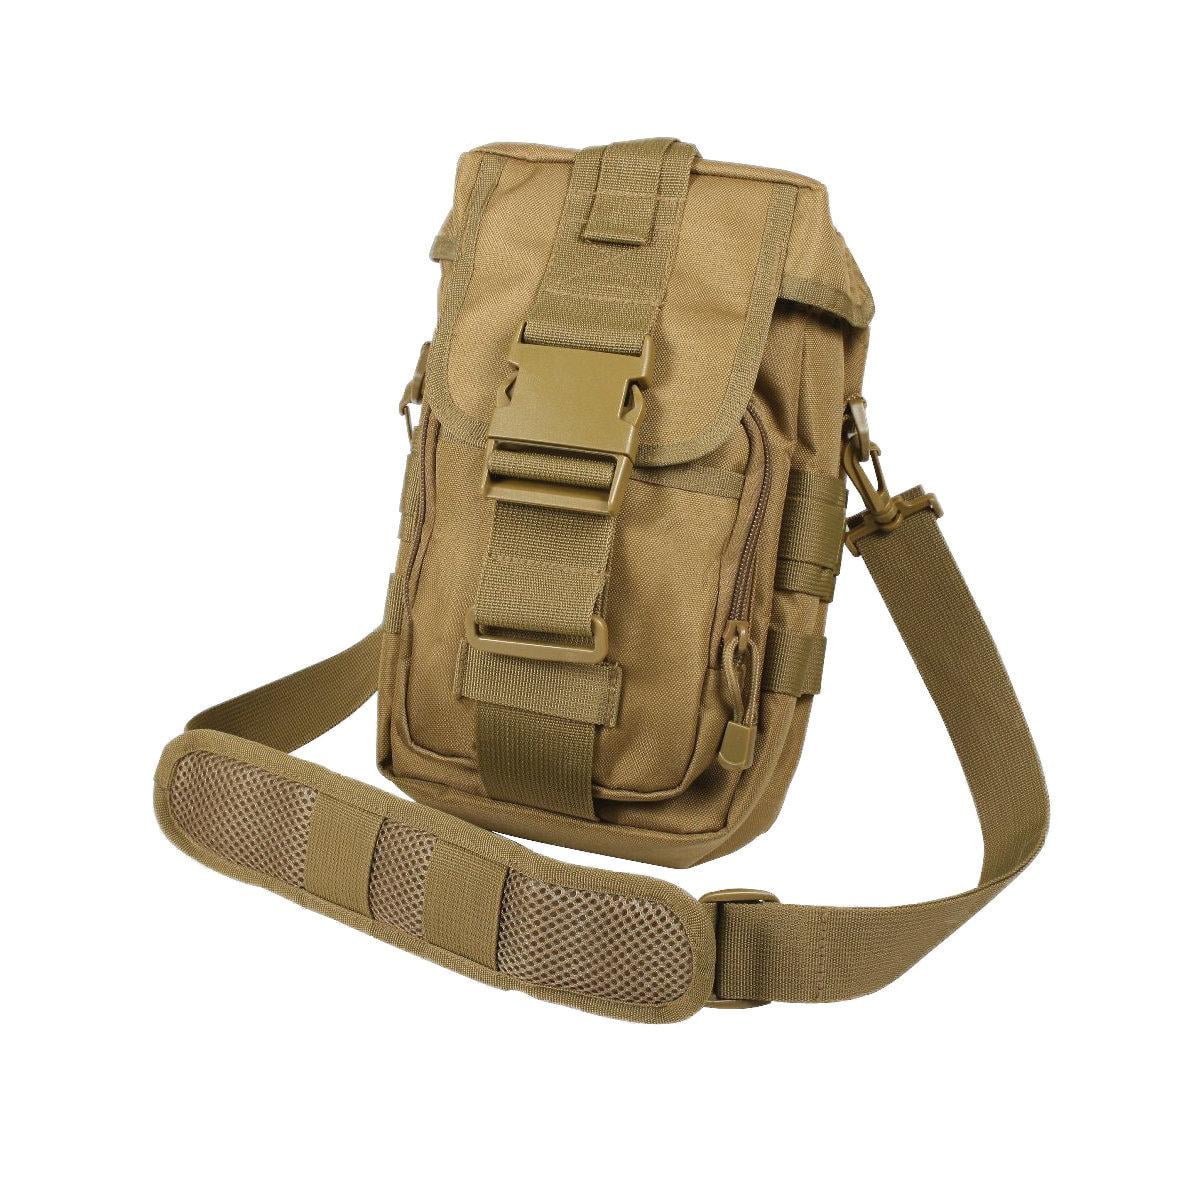 Rothco Flexipack Tactical Shoulder Bag - Coyote Brown - Walmart.com